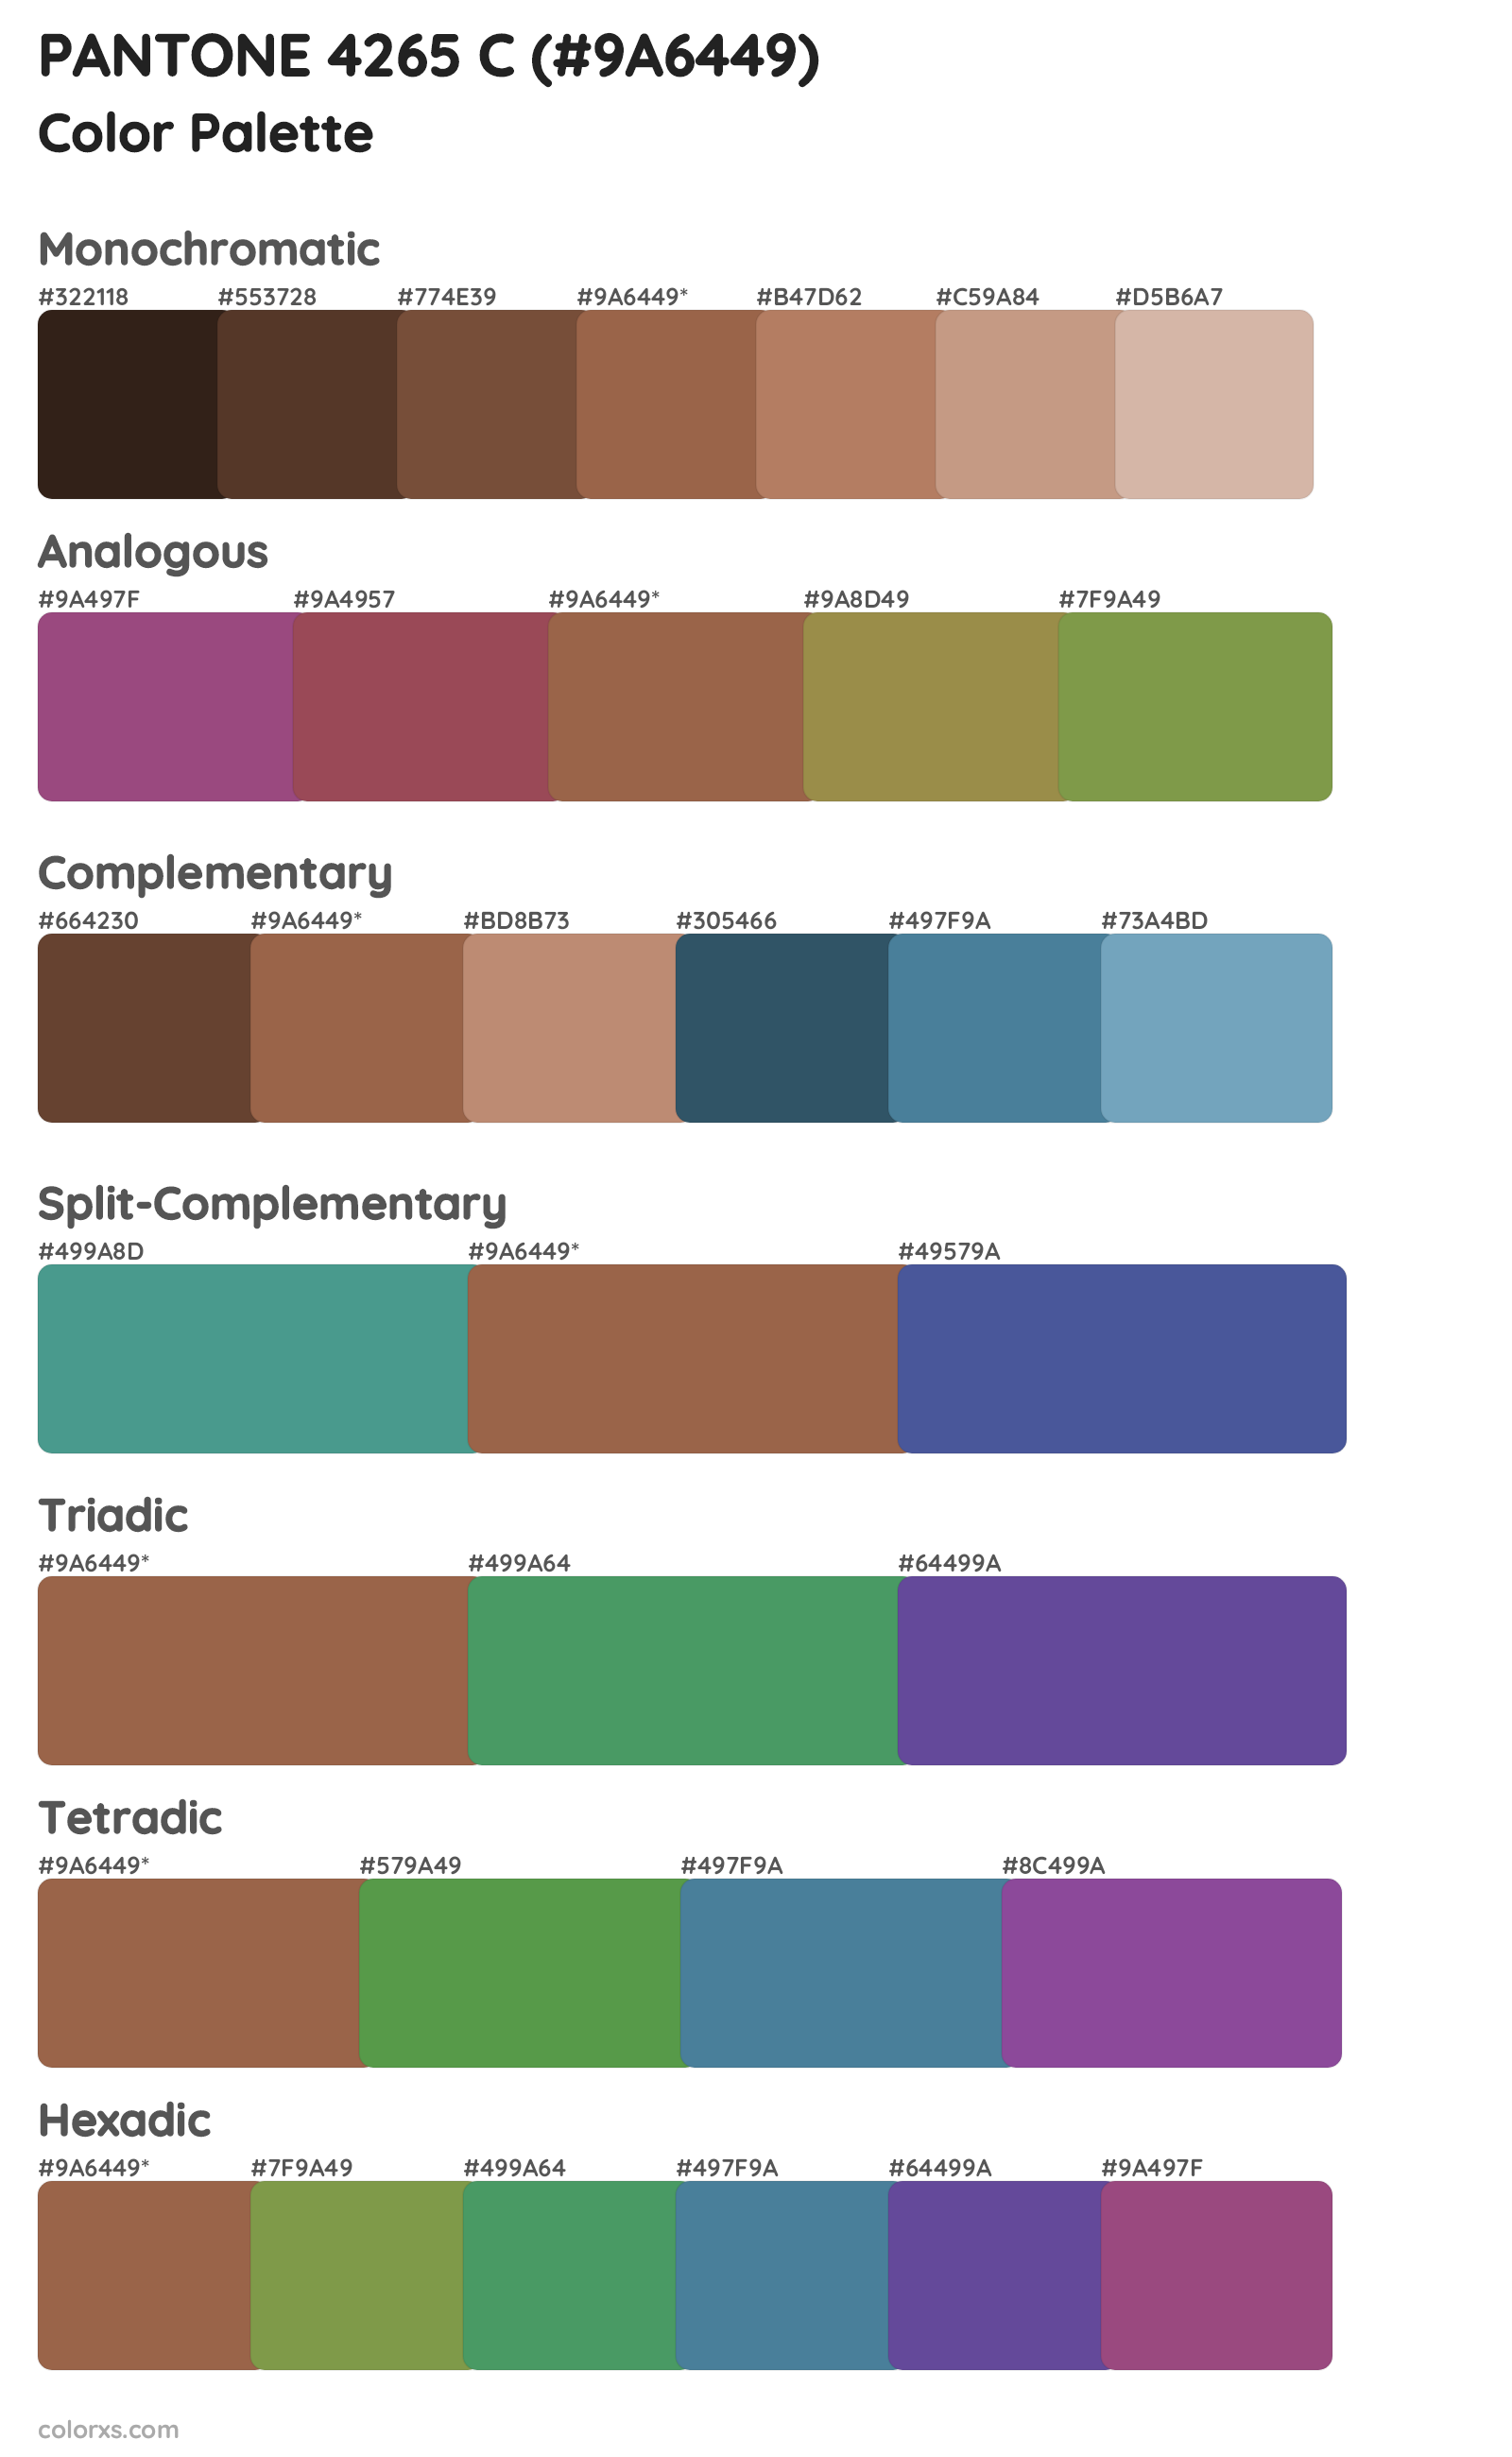 PANTONE 4265 C Color Scheme Palettes